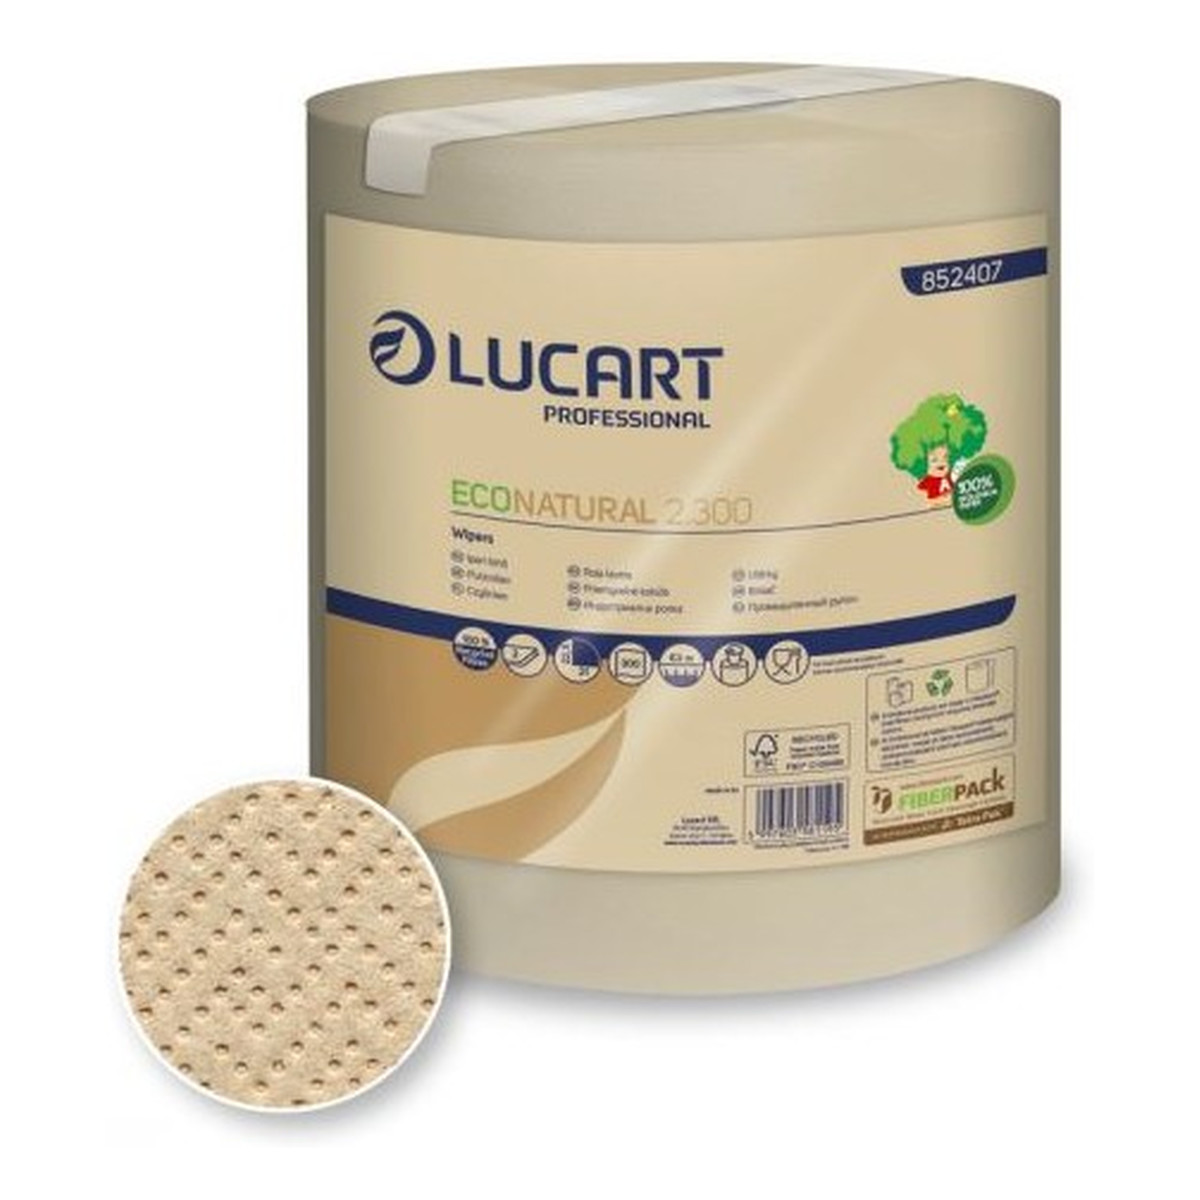 Lucart EcoNatural Ręcznik papierowy uniwersalny